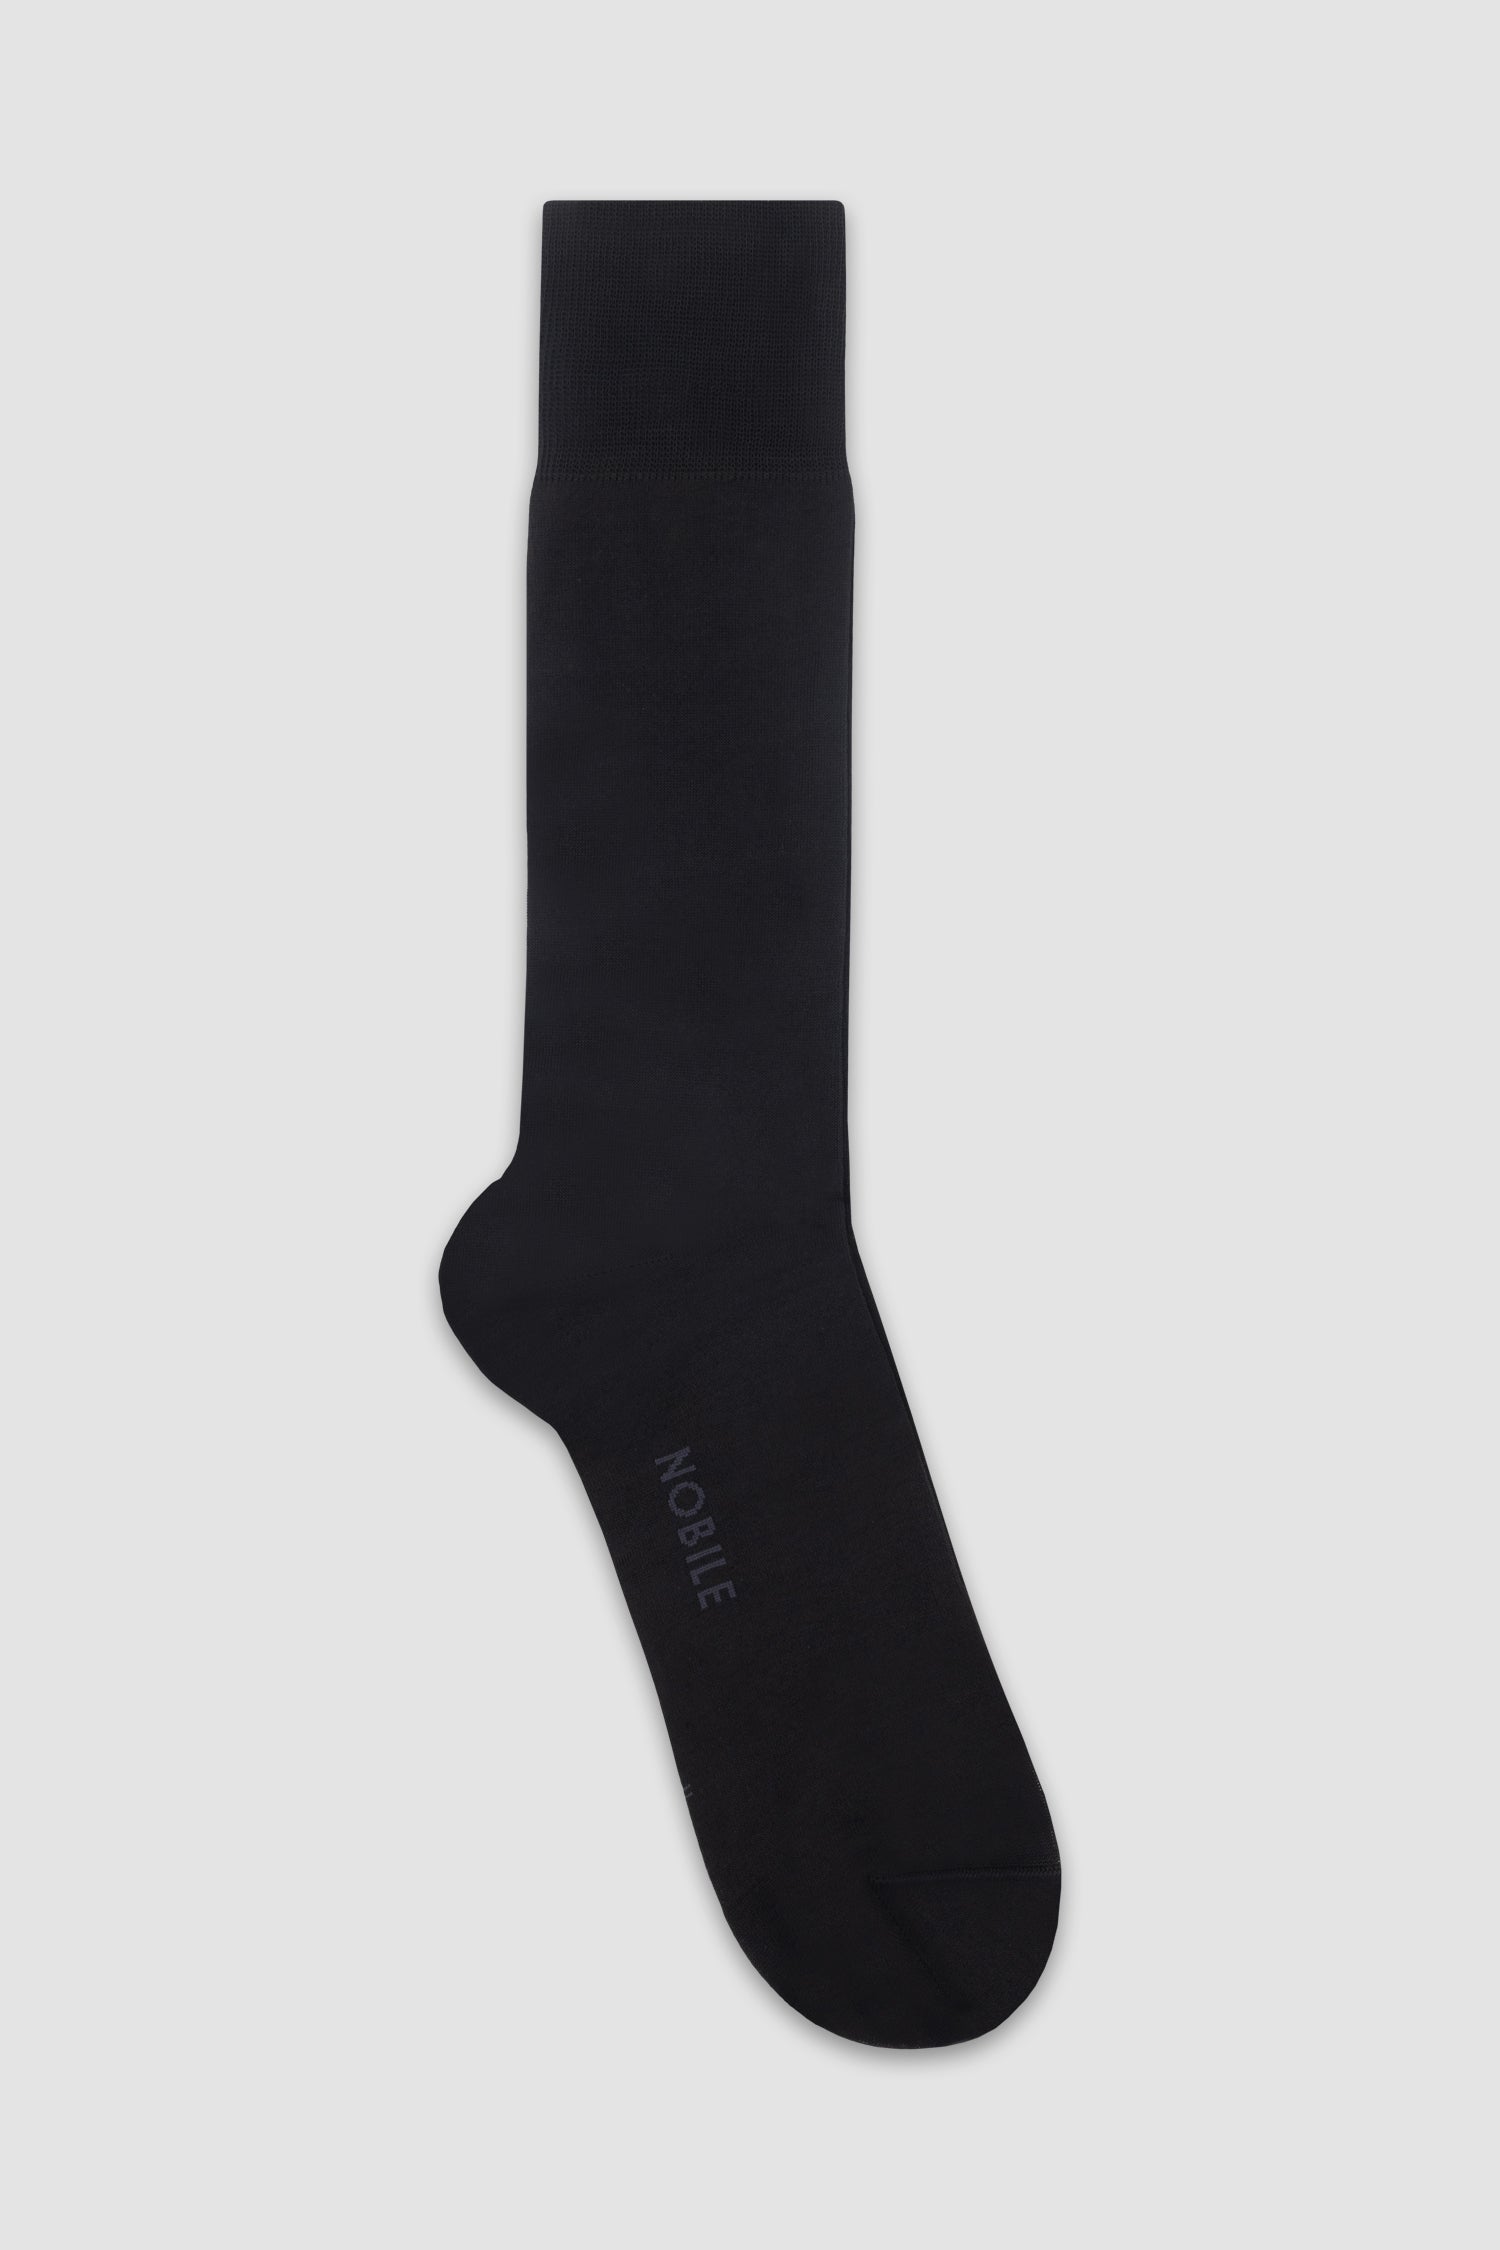 Amicis - AMICIS men: pure luxury - Dior socks with oblique logo